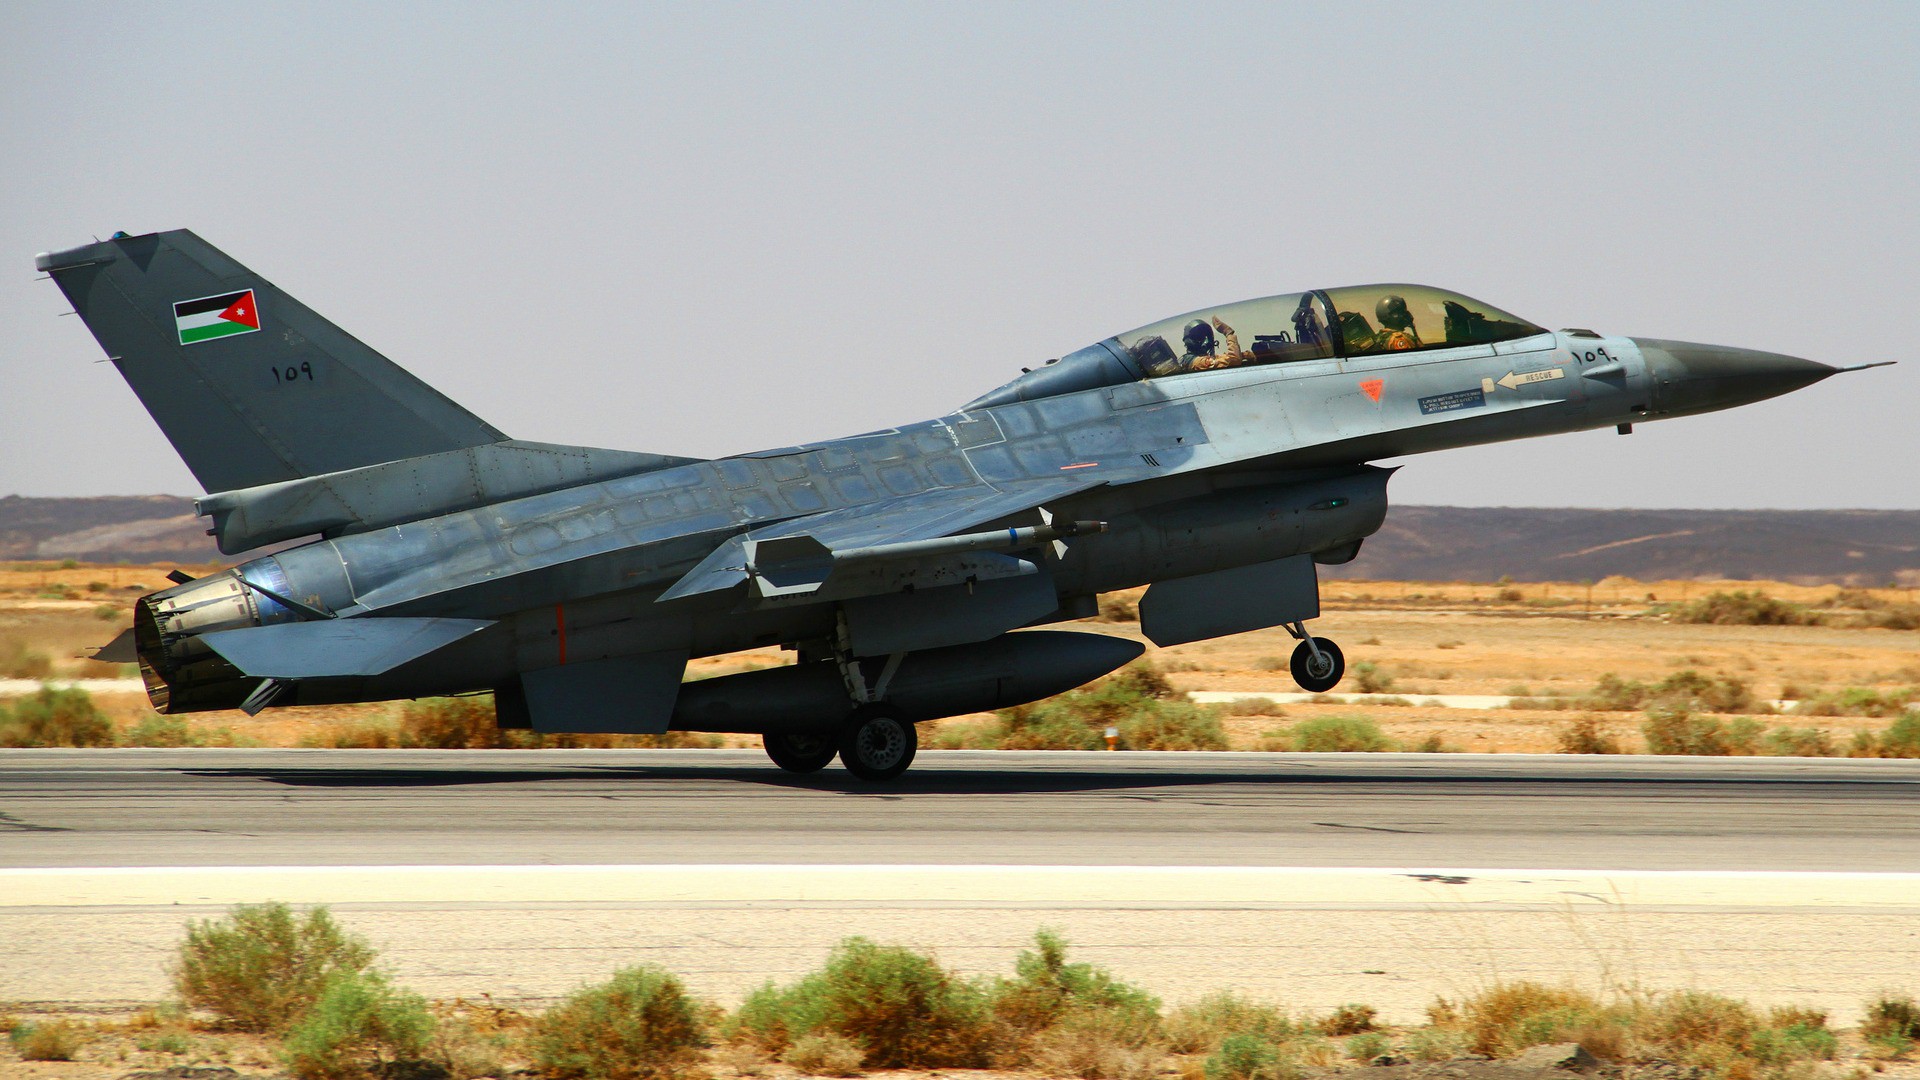 Un pilote de l'armée de l'air jordanienne a été exécuté par l'EI (Photo: US dept of Defense/Flickr/CC BY-NC-ND 2.0)